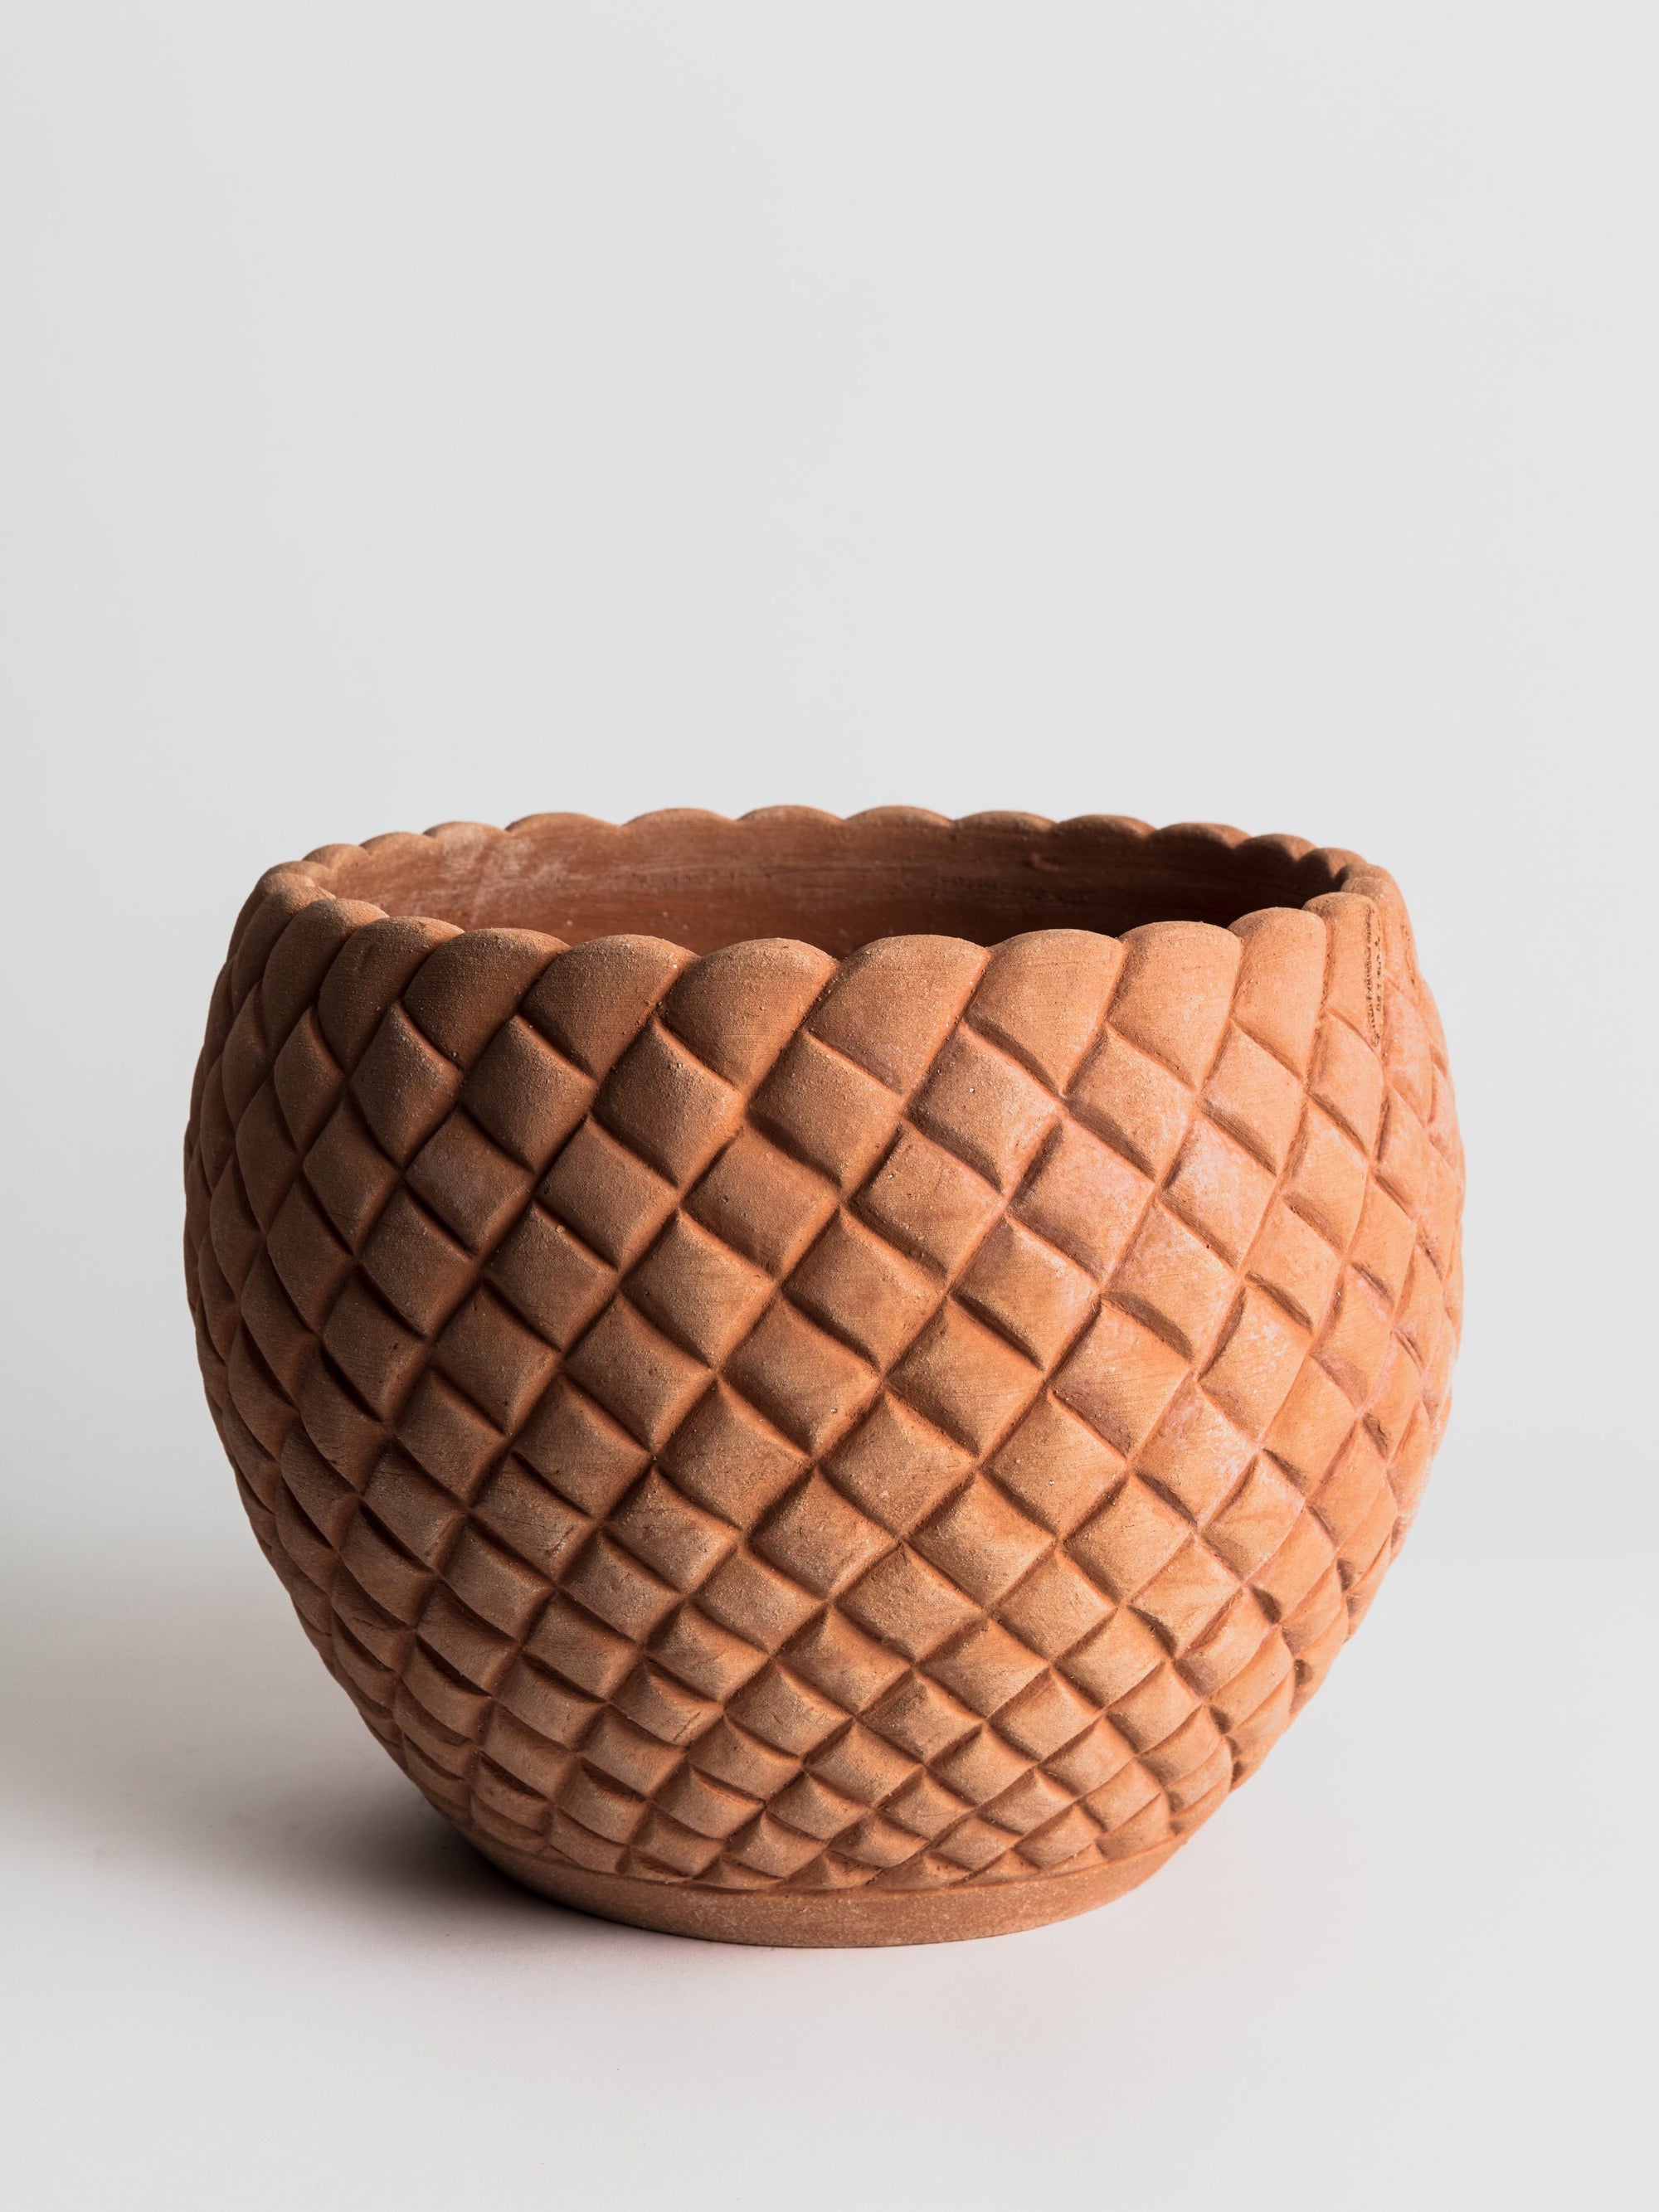 Cachepot Bugnato - Terracotta Pottery M.I.T.A.L 